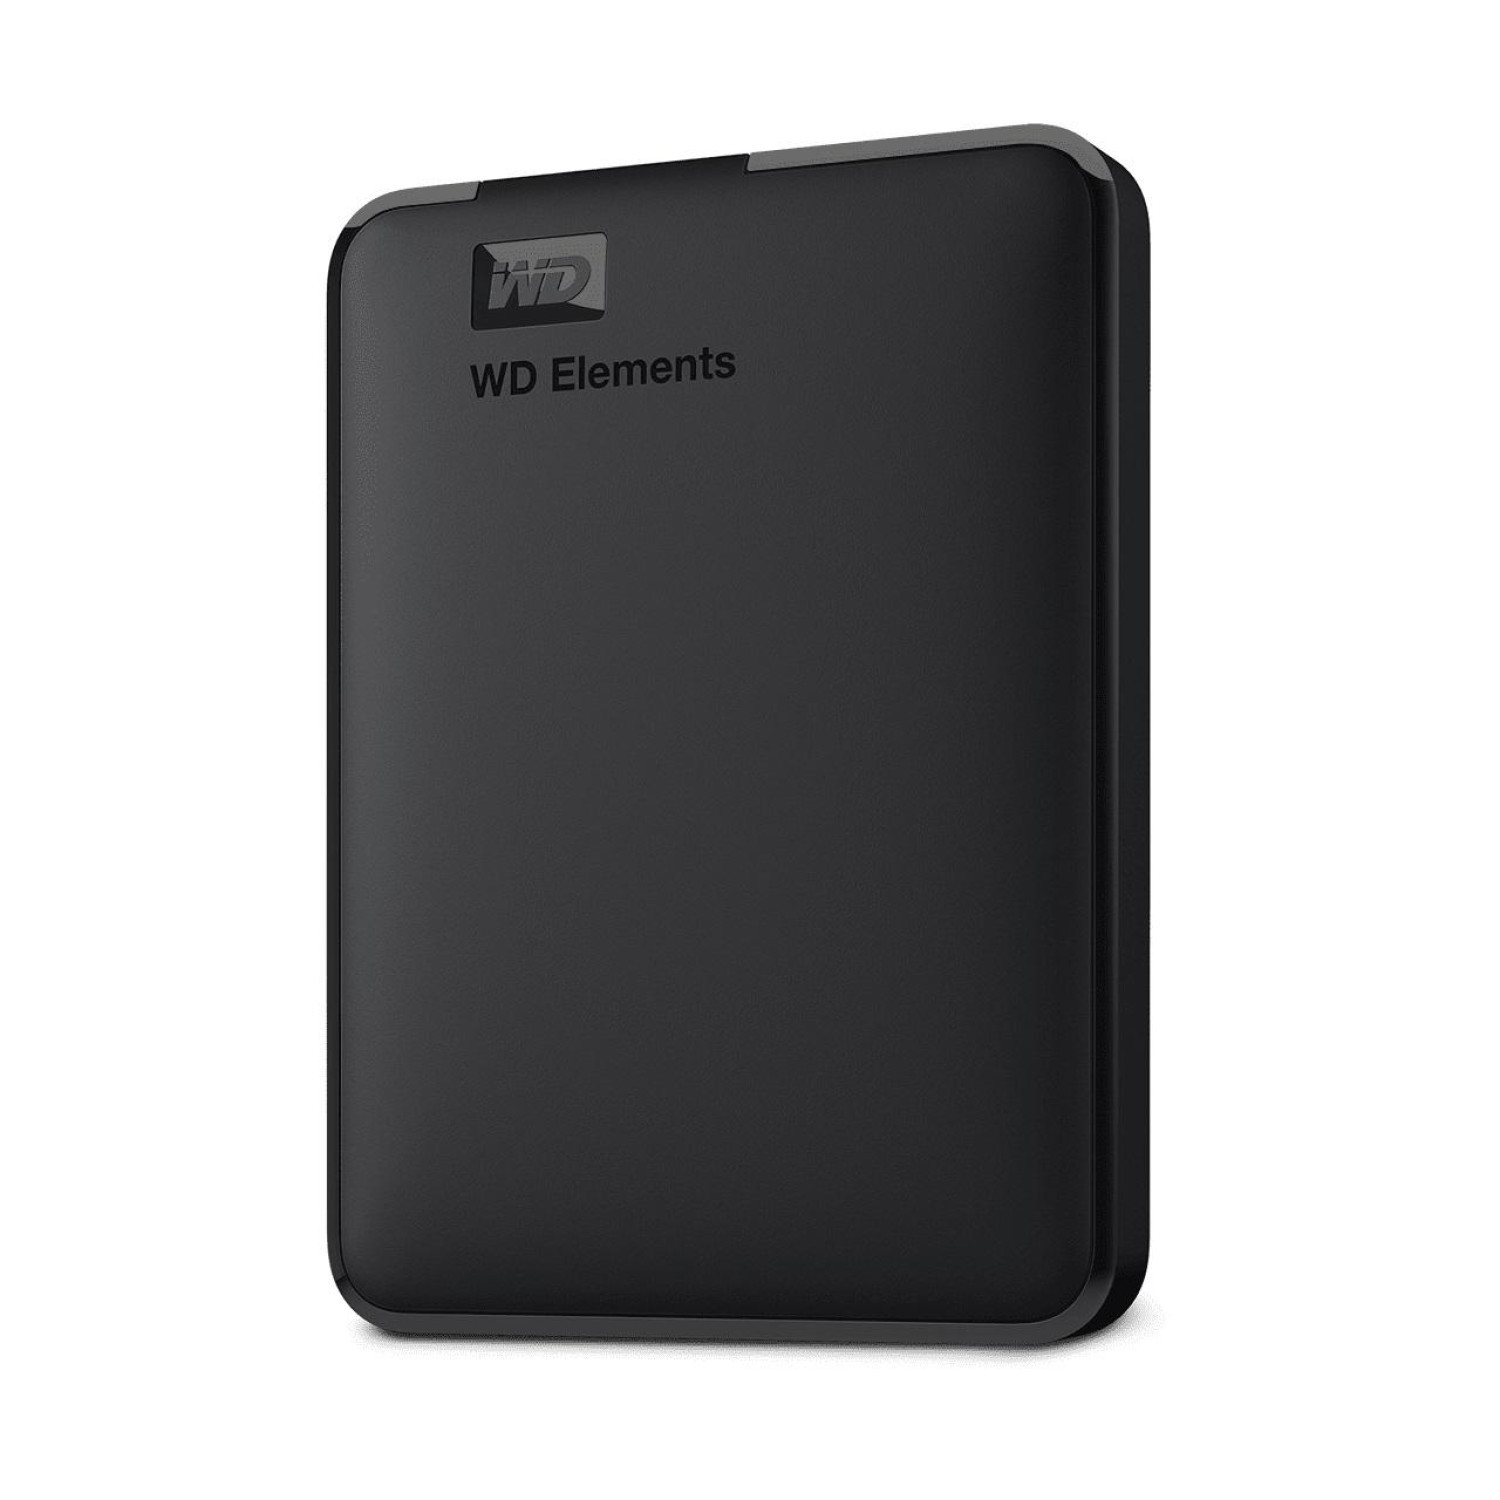 Външен хард диск Western Digital Elements Portable, 2TB, 2.5", USB 3.0, Черен